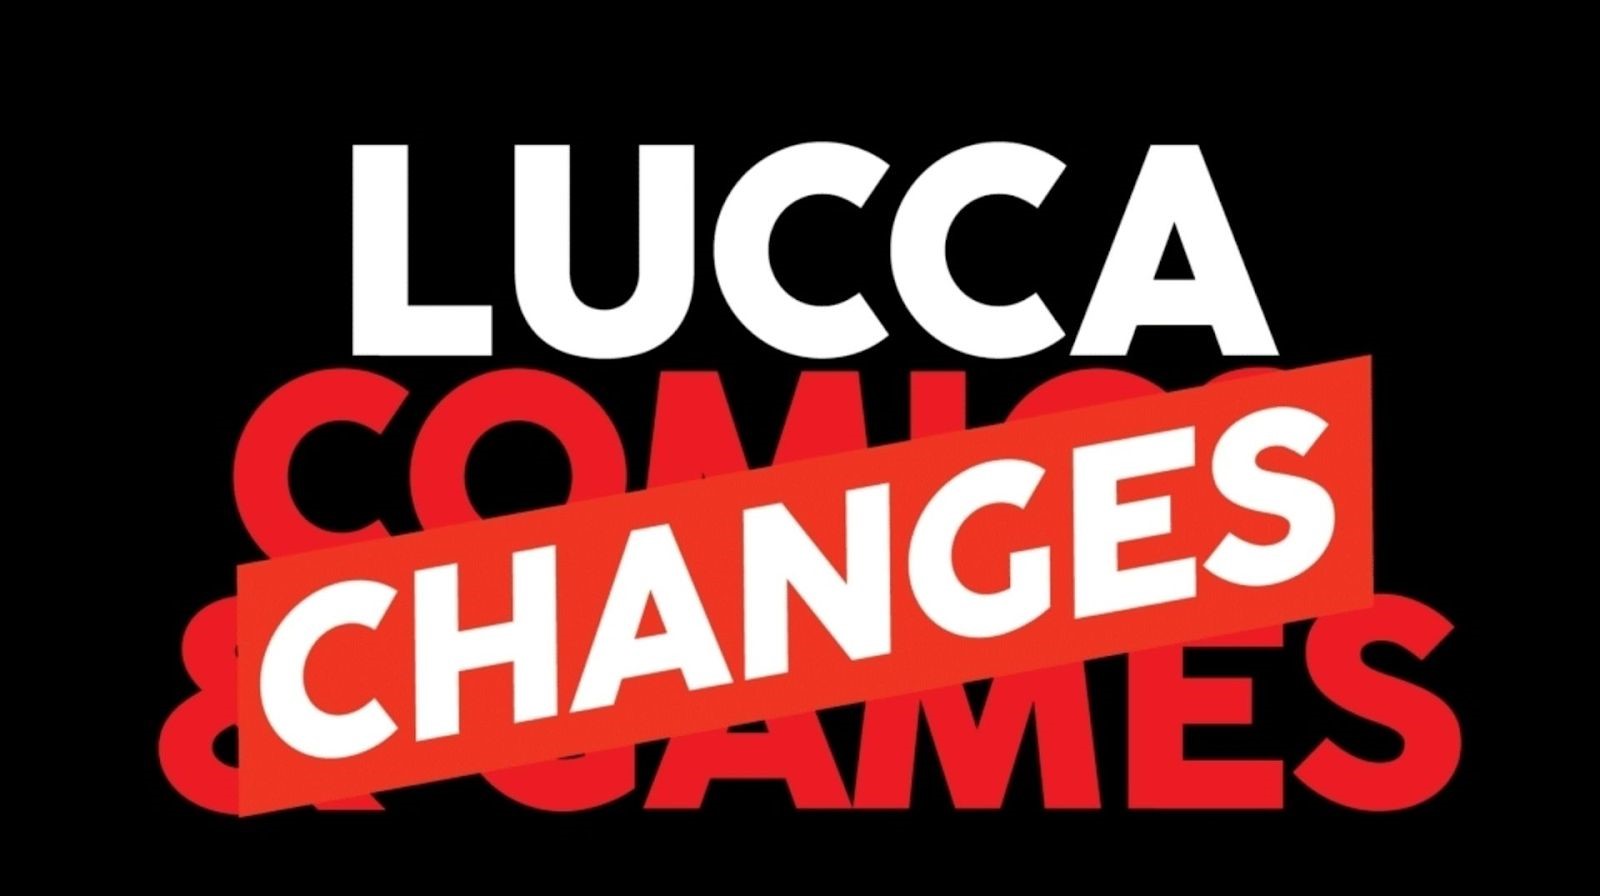 Lucca Changes: il nuovo Festival del Fumetto 2020